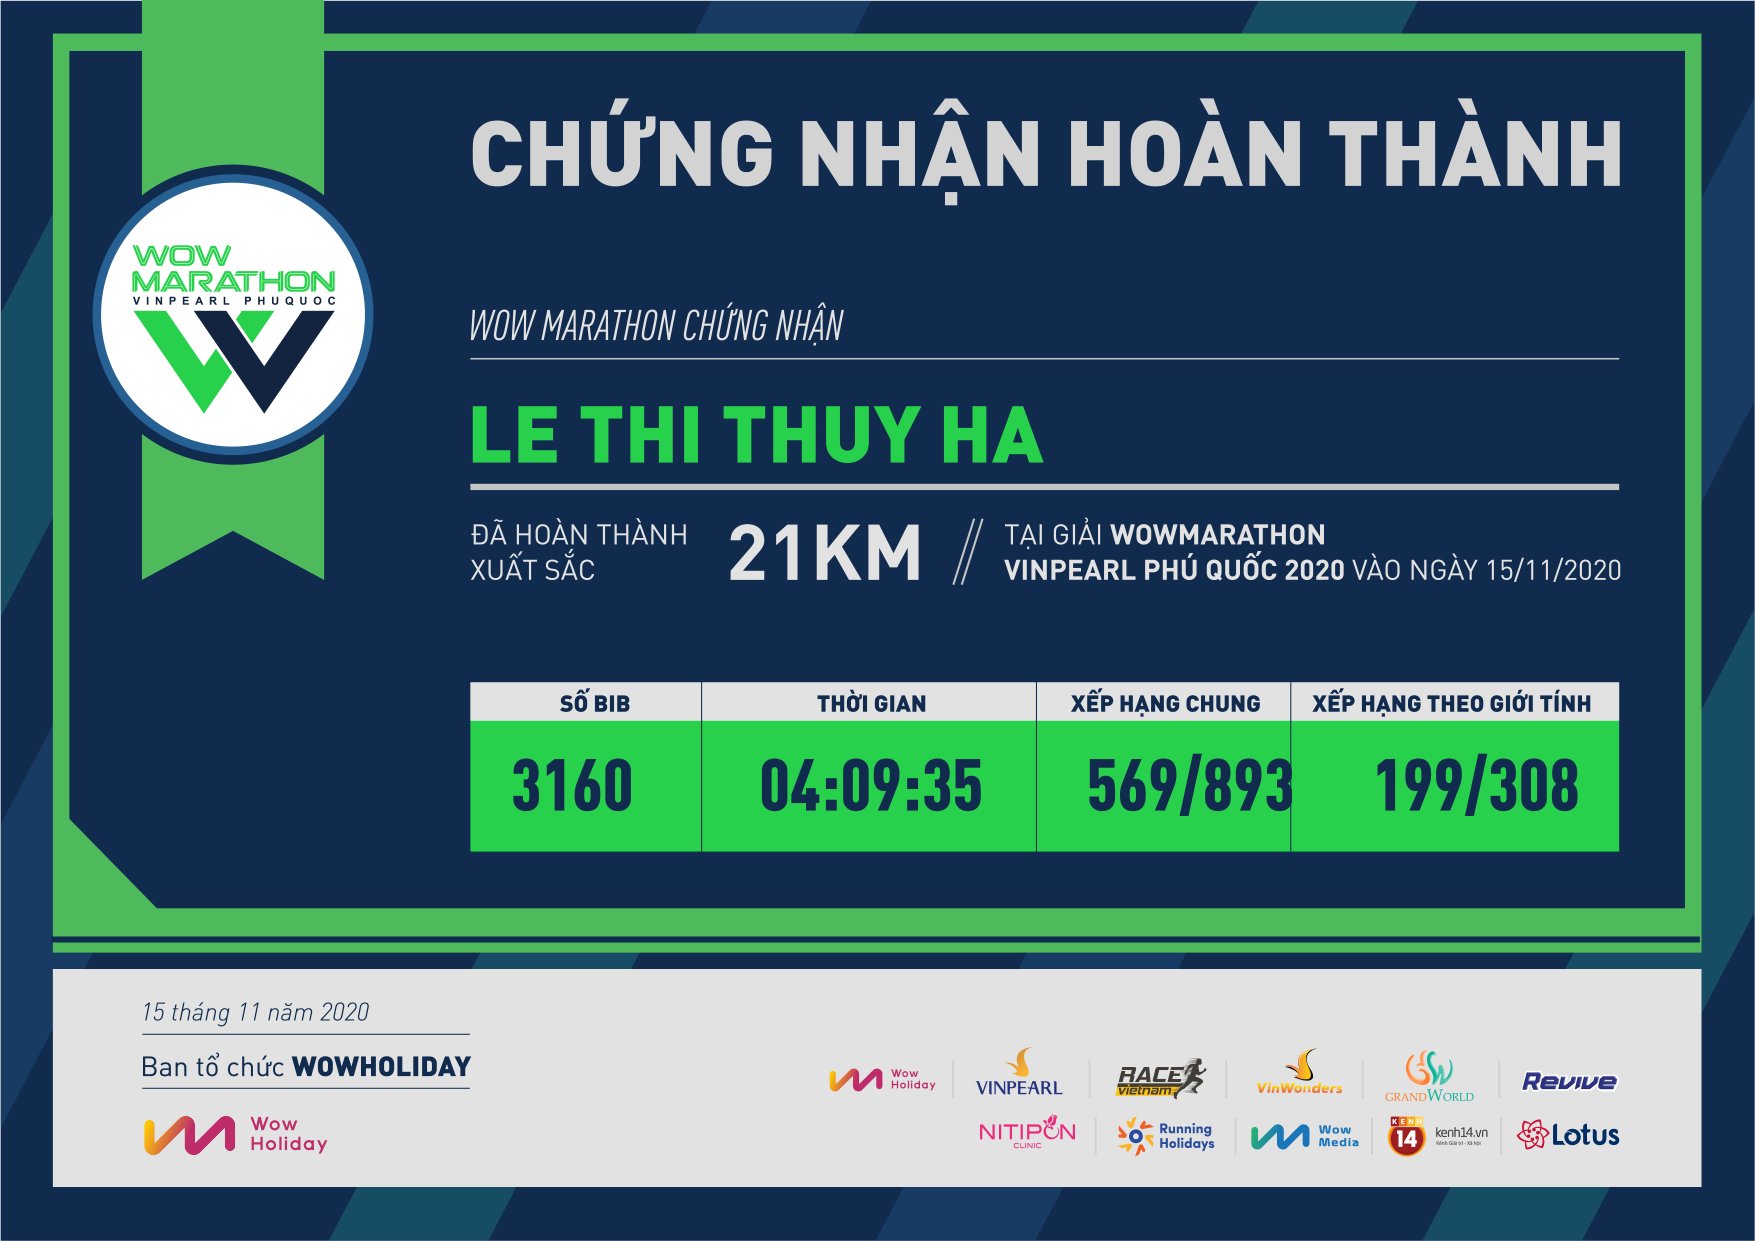 3160 - Le Thi Thuy Ha